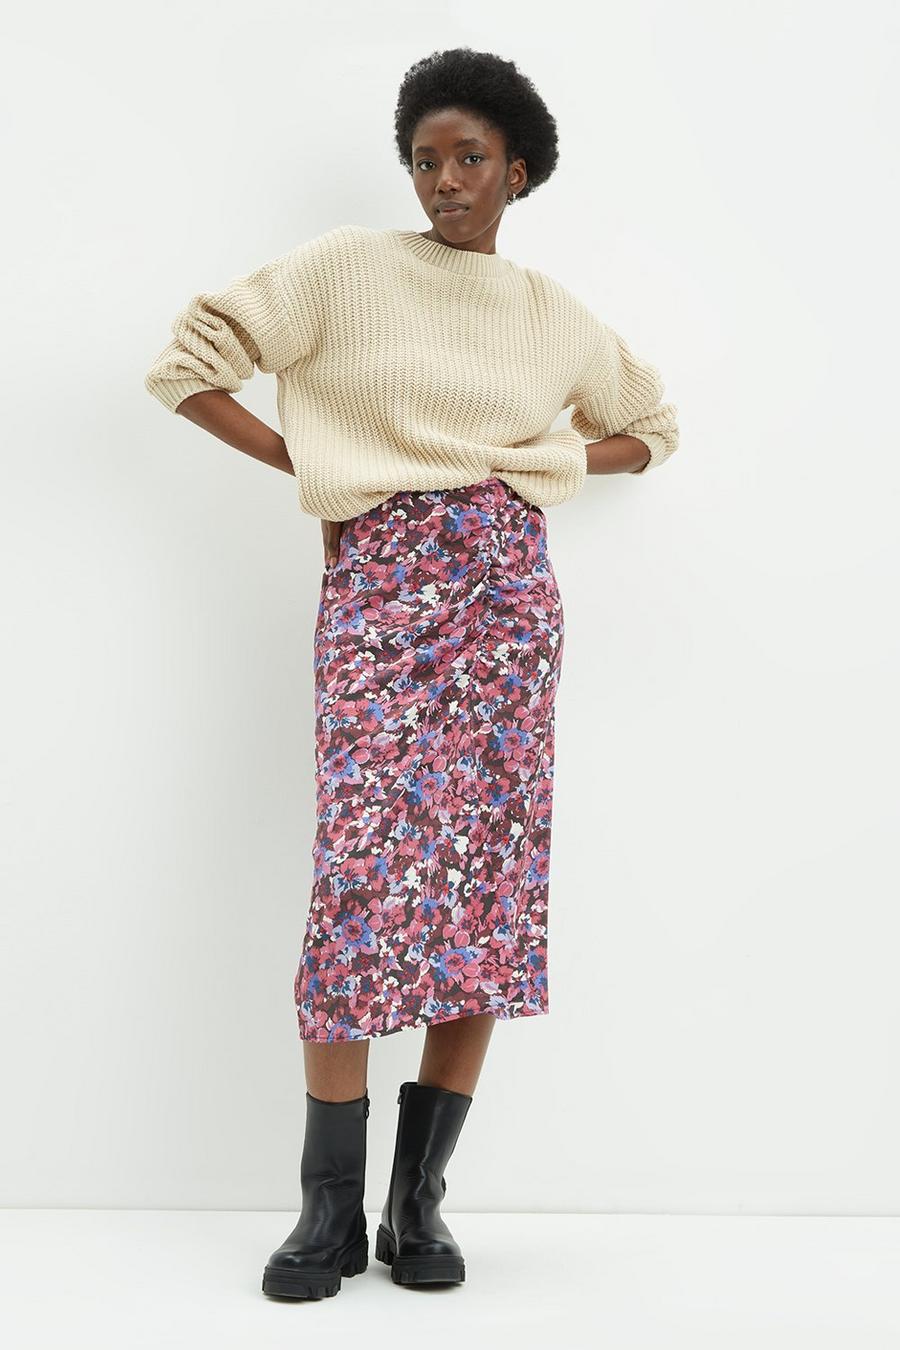 Purple Floral Midi Skirt